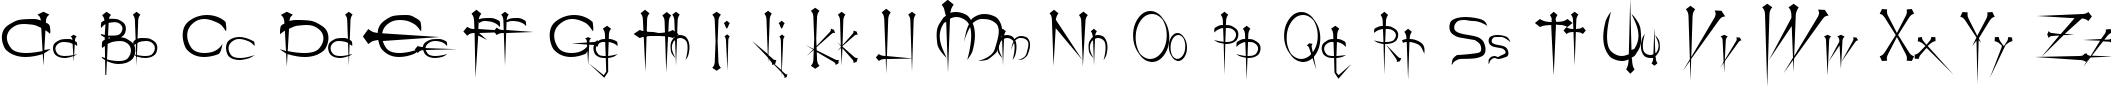 Пример написания английского алфавита шрифтом Ogilvie Regular